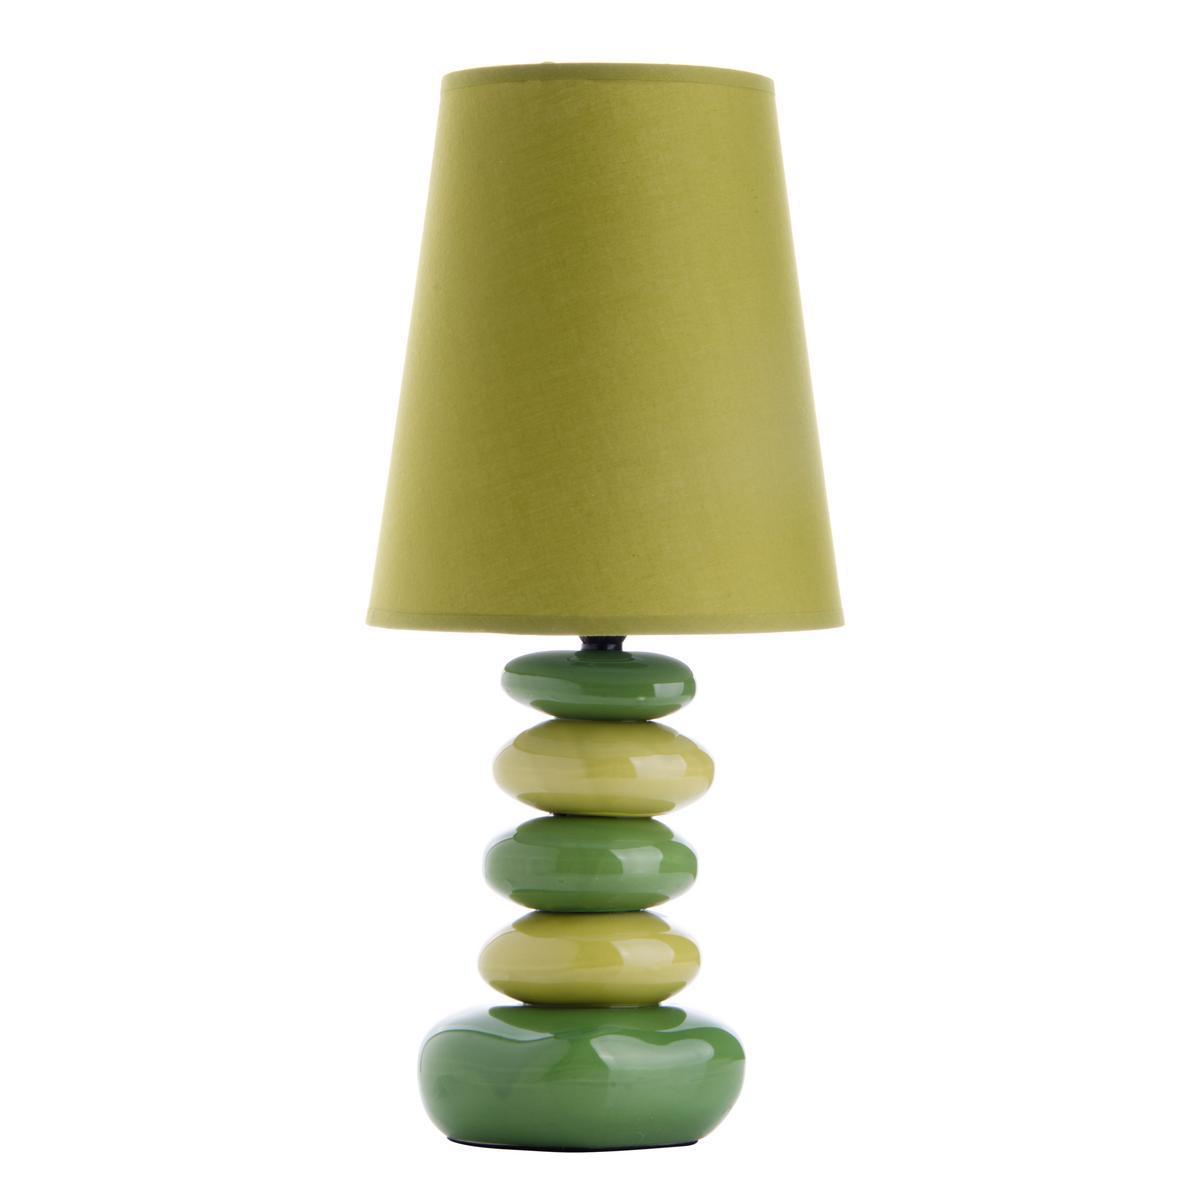 Lampe à poser stones colors - Céramique - Hauteur 41 cm - Vert anis